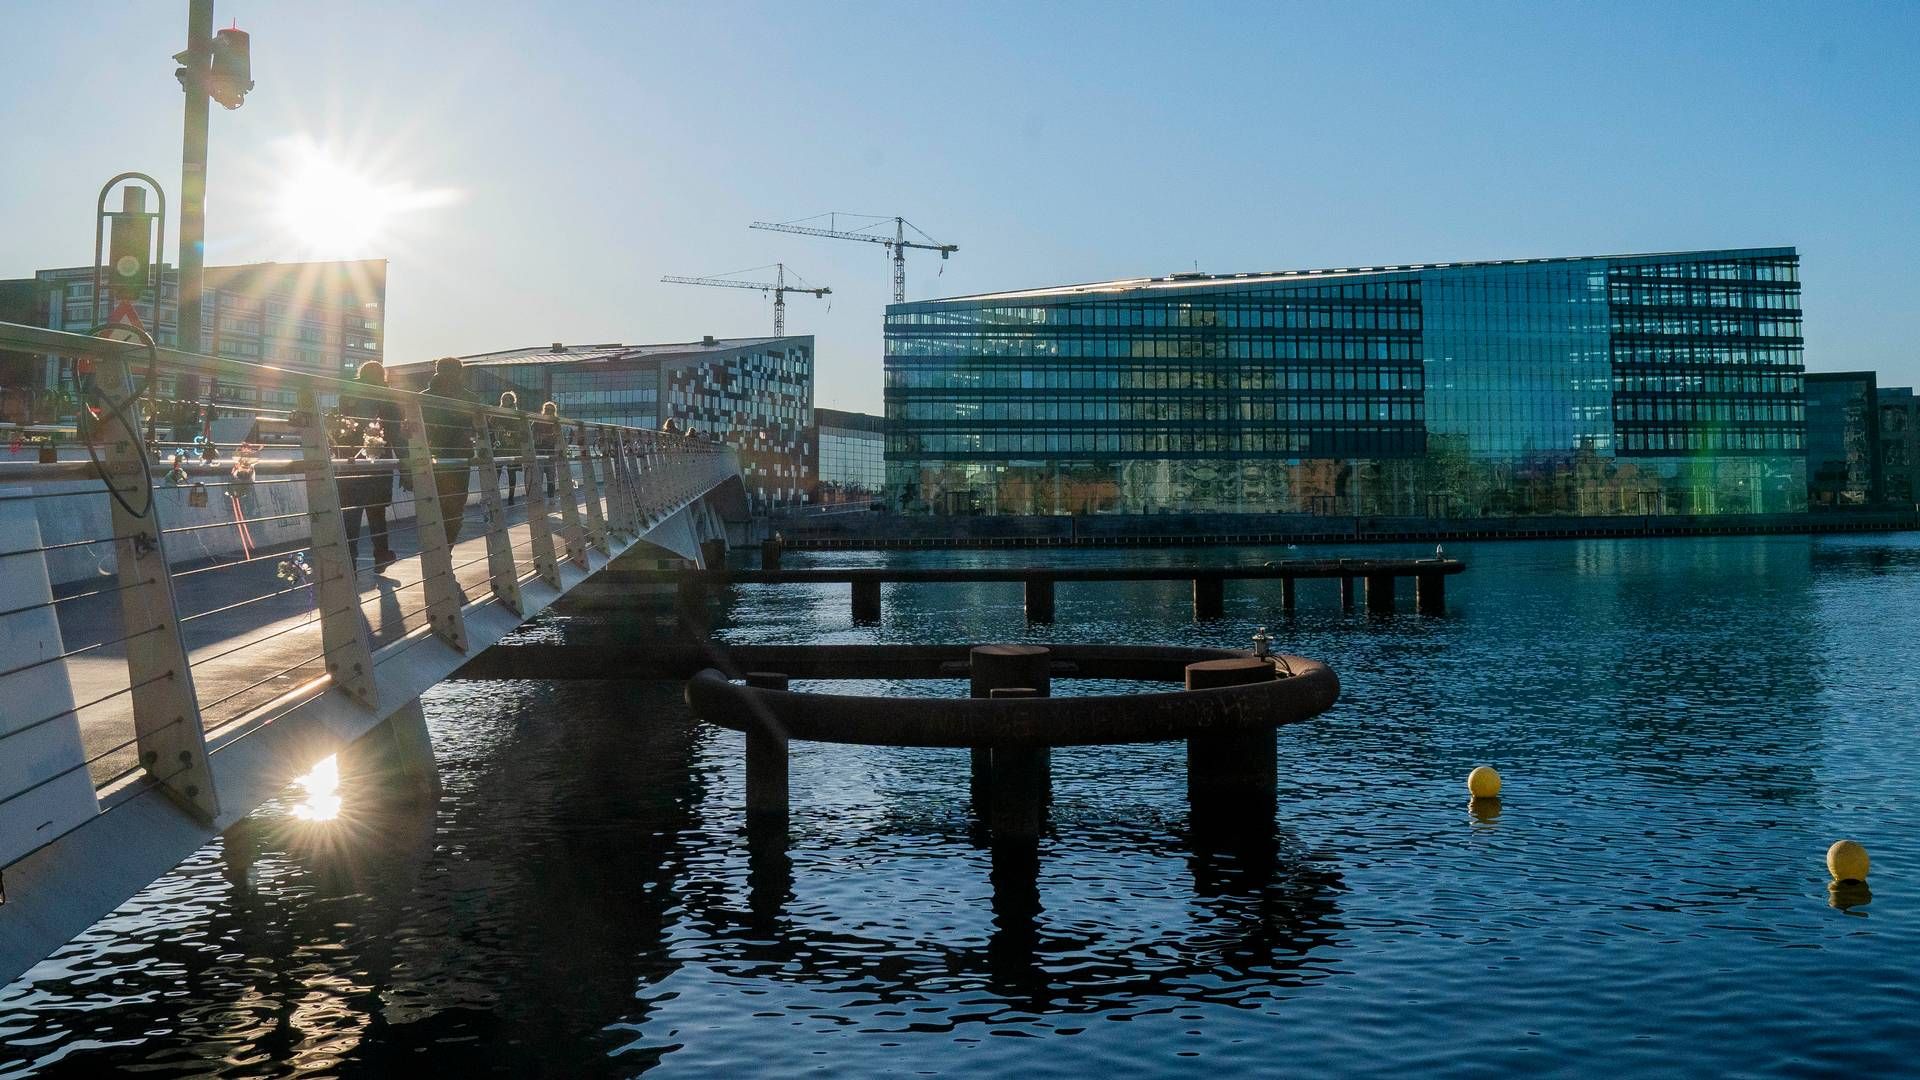 Richard Sand er blandt andet formand for Aller-koncernen, der blandt andet har et kontor på Havneholmen i København. | Foto: Jesper Sunesen / Aller Foto & Video